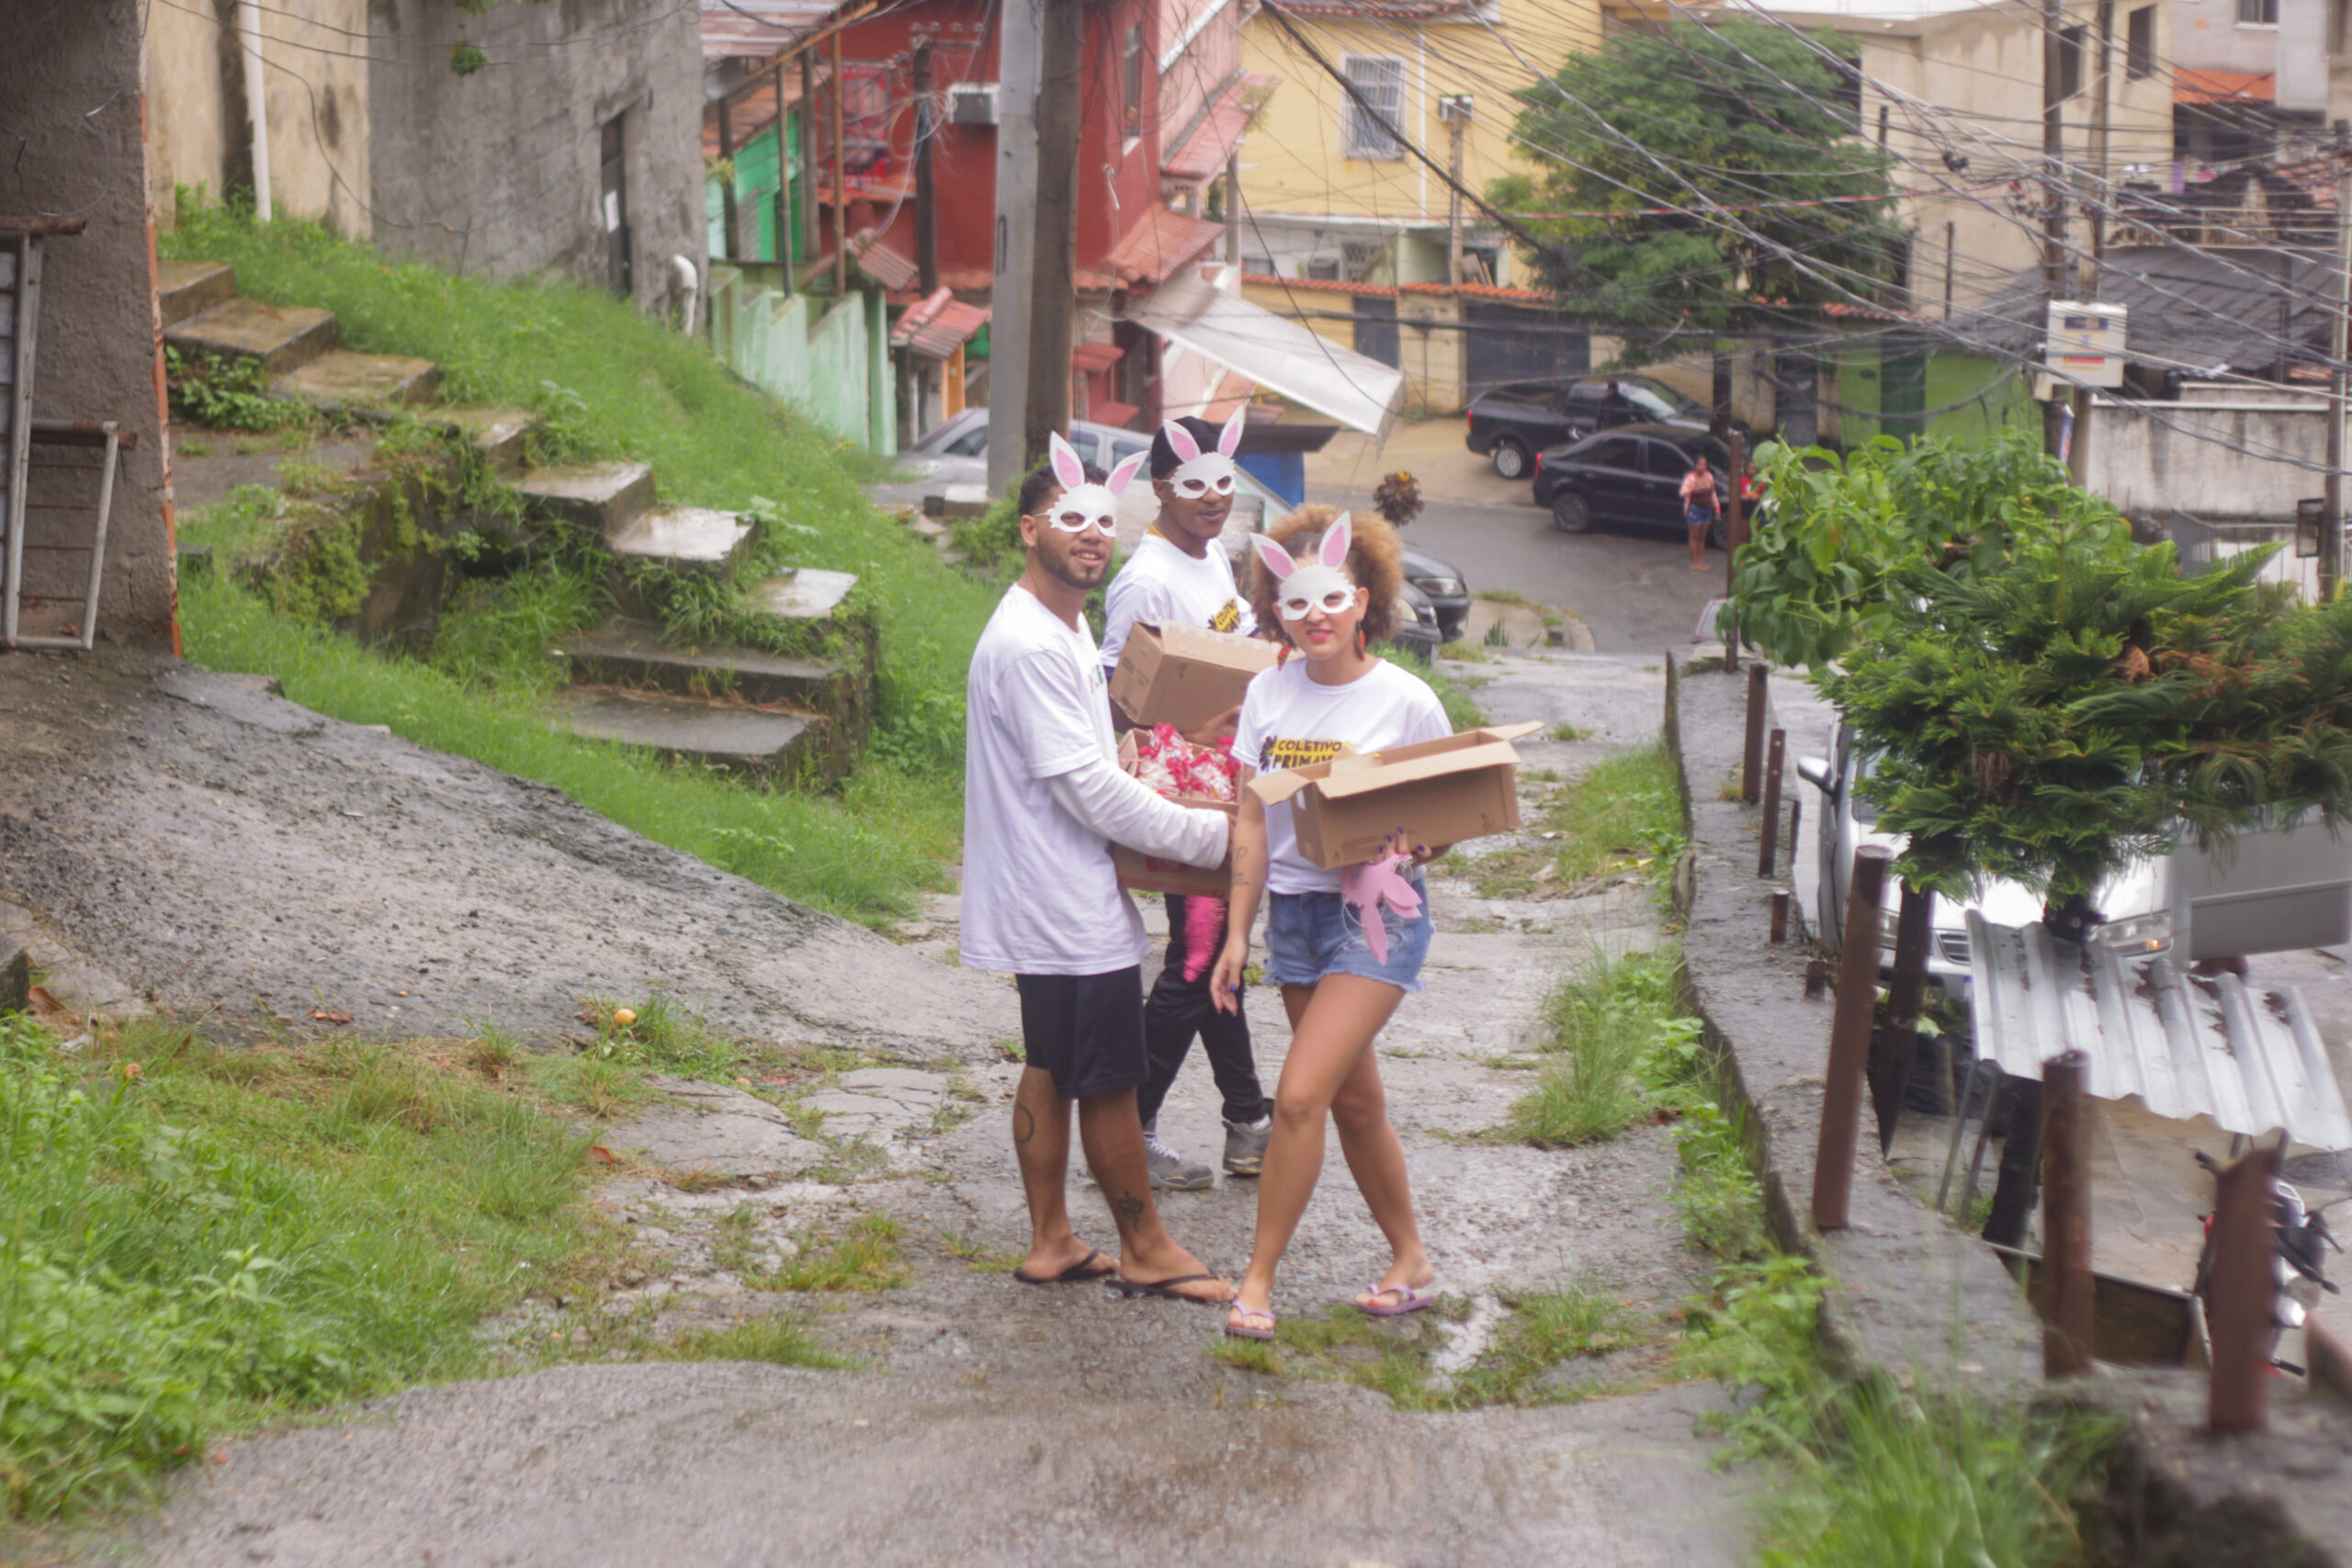 Matheus Fernando, Suellen Souza, Daniel Mendes, distribuindo os kits de chocolates. Foto: Vinícius Ribeiro 